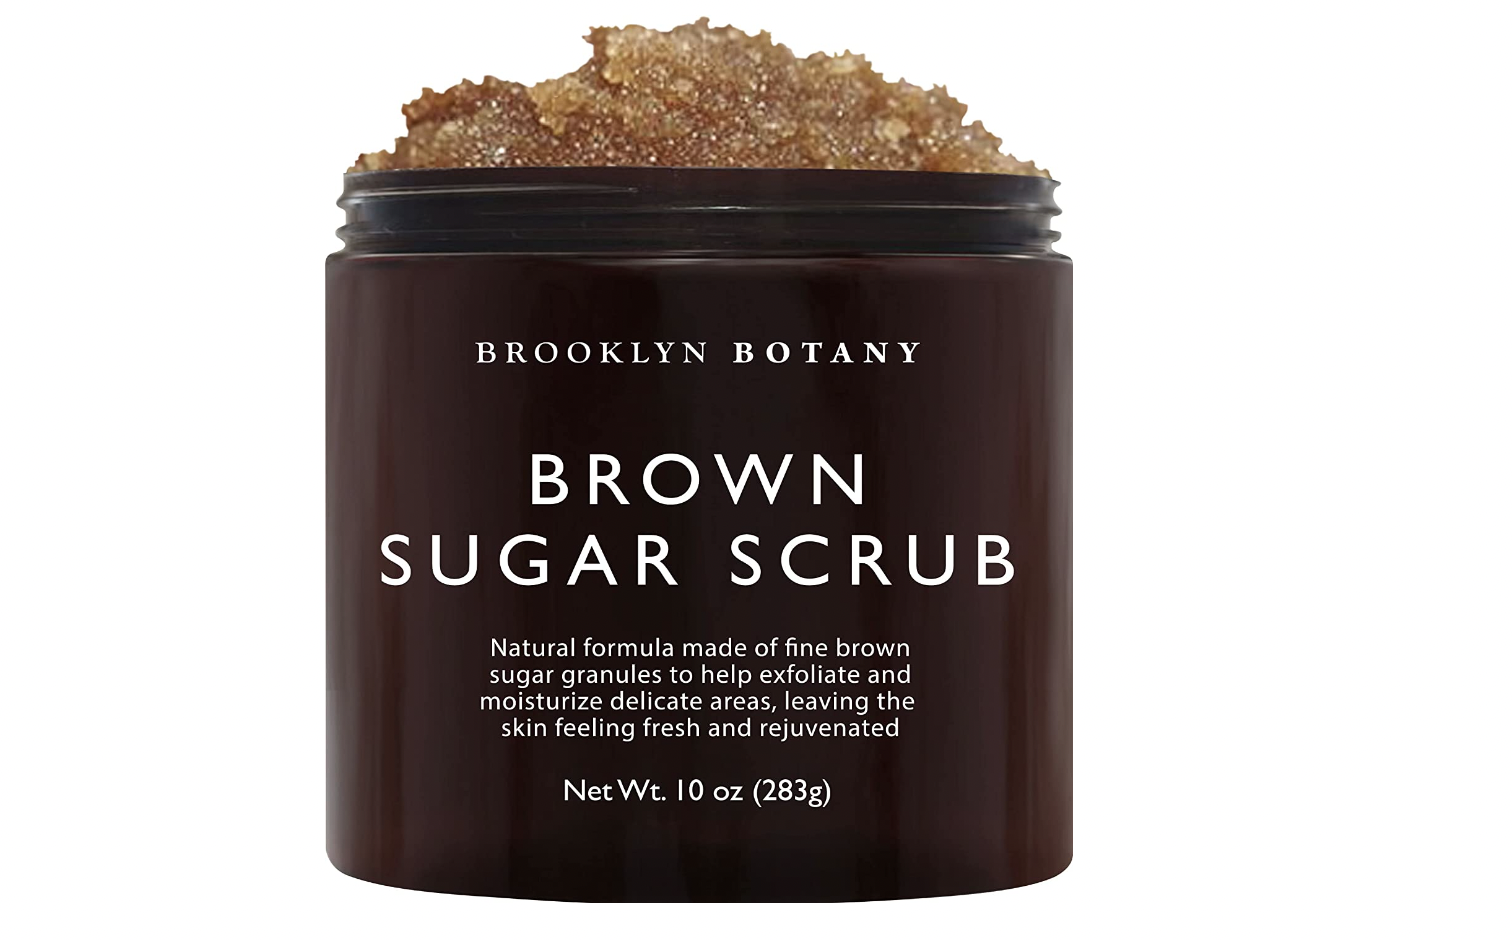 Brown sugar scrub